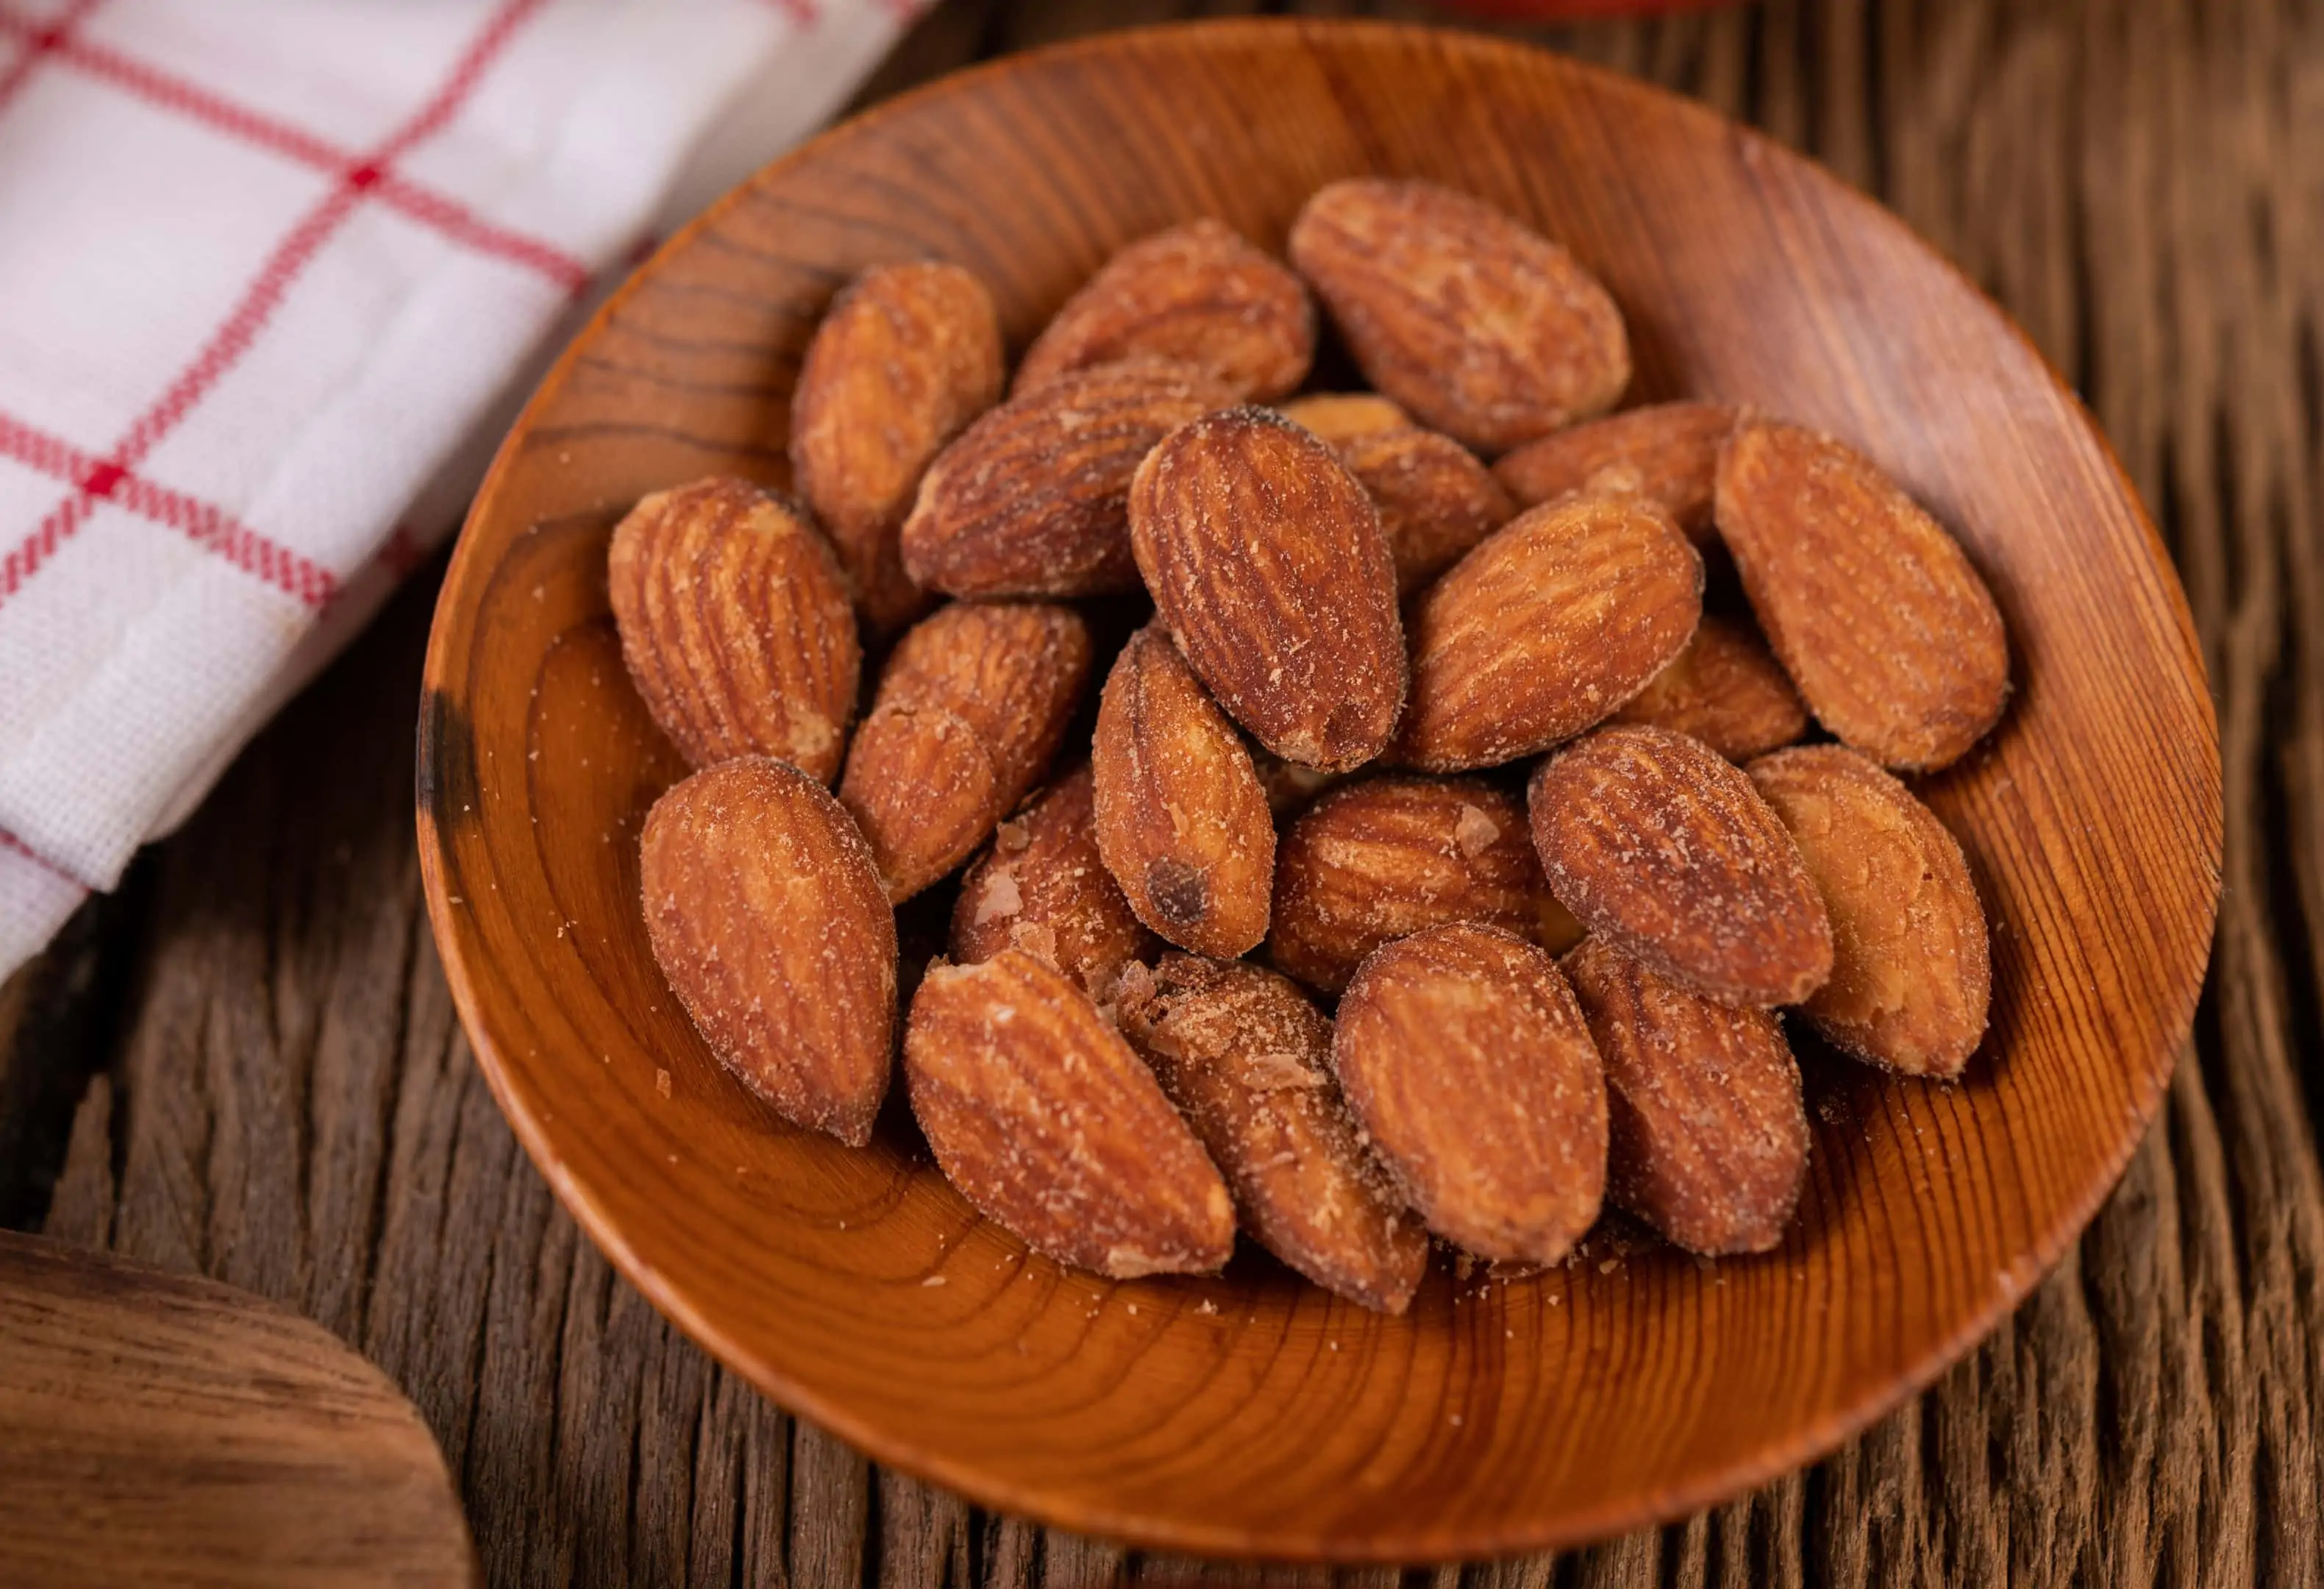 Roasted Tamari almonds in a plate